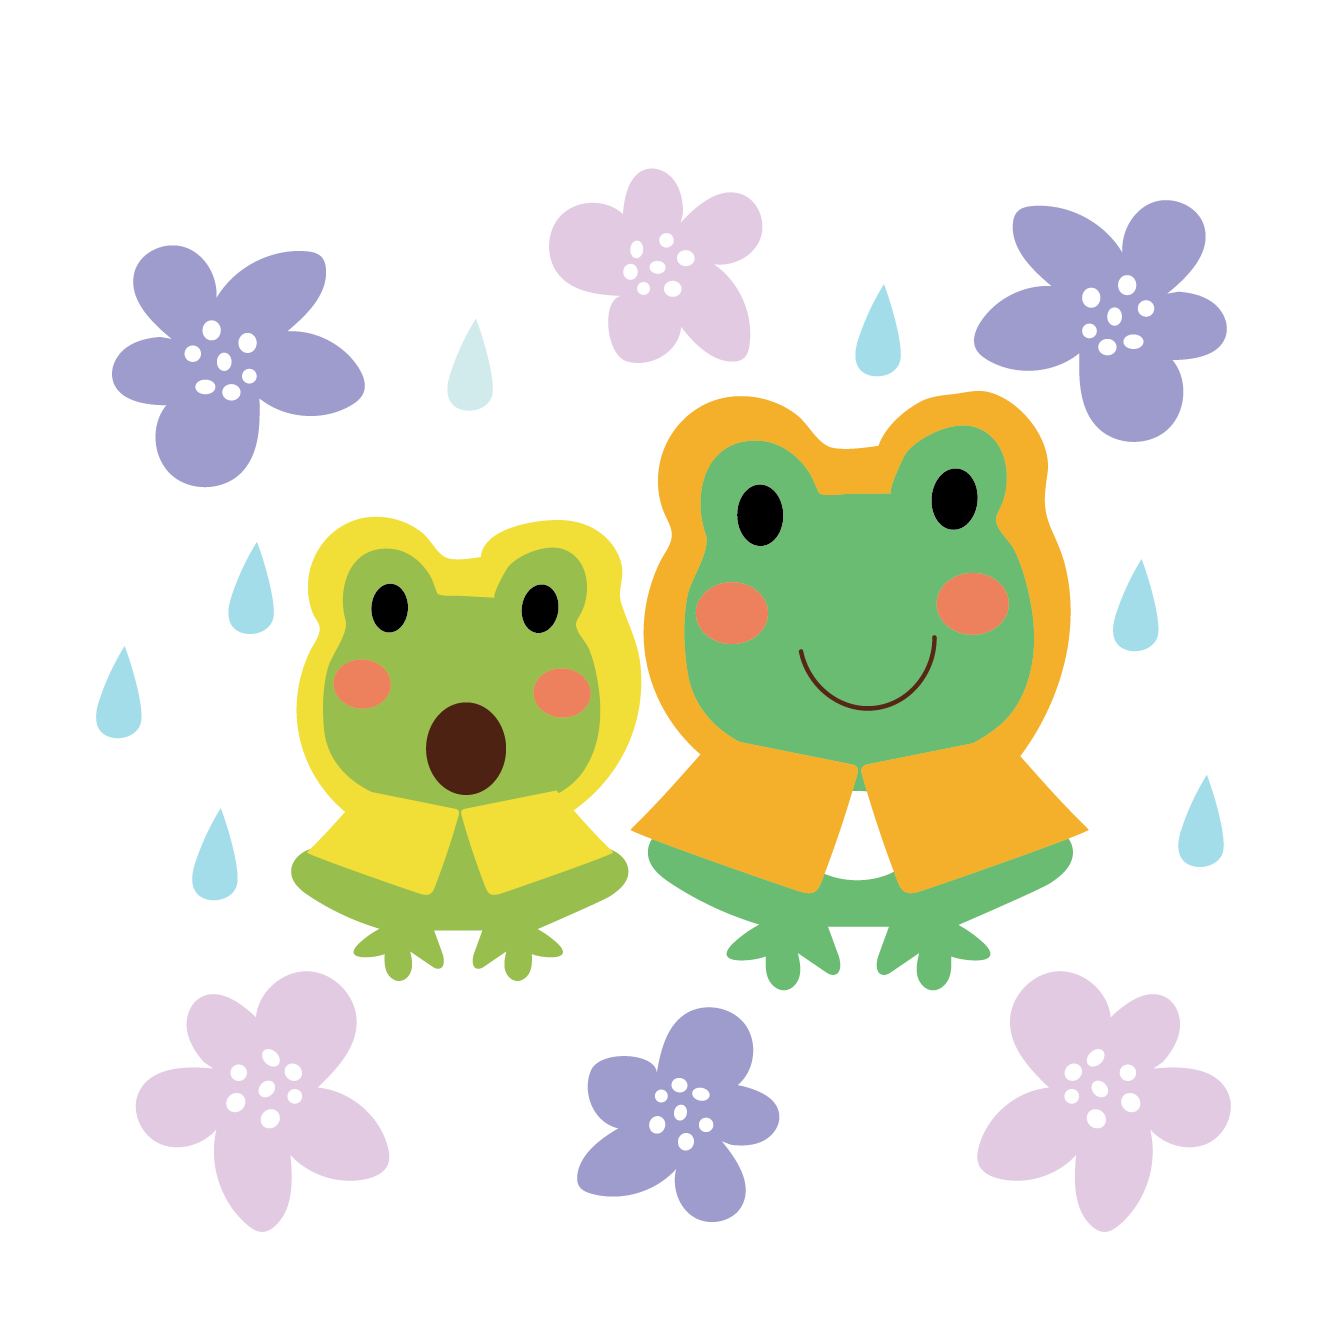 レインコートを着た カエル 蛙 の親子のイラスト 梅雨 商用フリー 無料 のイラスト素材なら イラストマンション